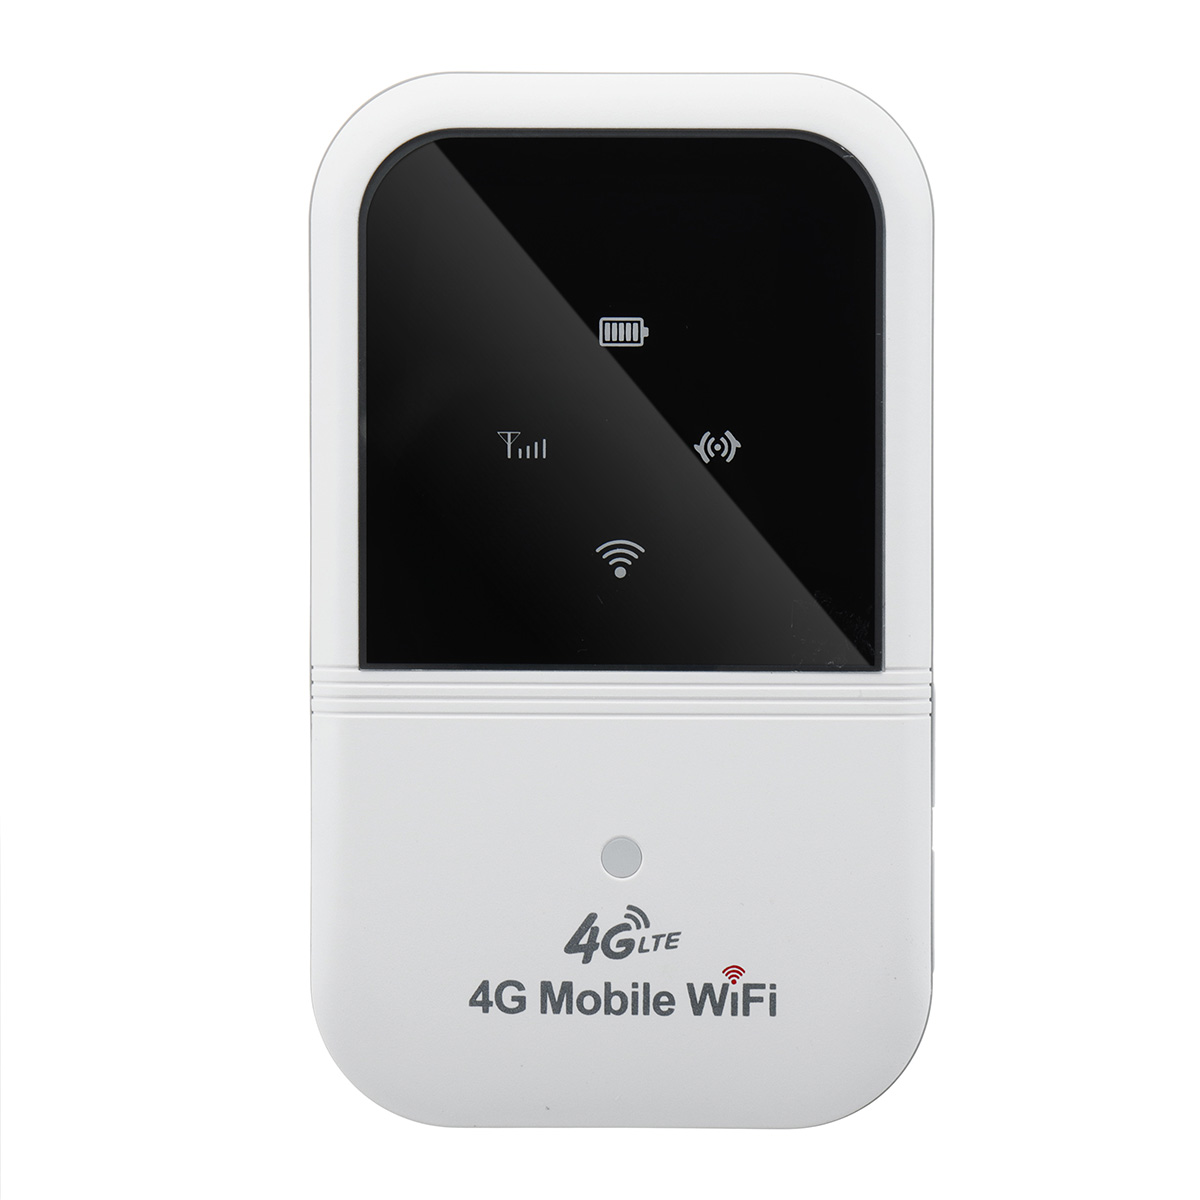 Camisin Routeur WiFi 5G Portable MiFi 4G LTE MiFi Mobile WiFi Hotspot 2100MAh Routeur Wi-FI de Voiture avec Fente pour Carte Sim